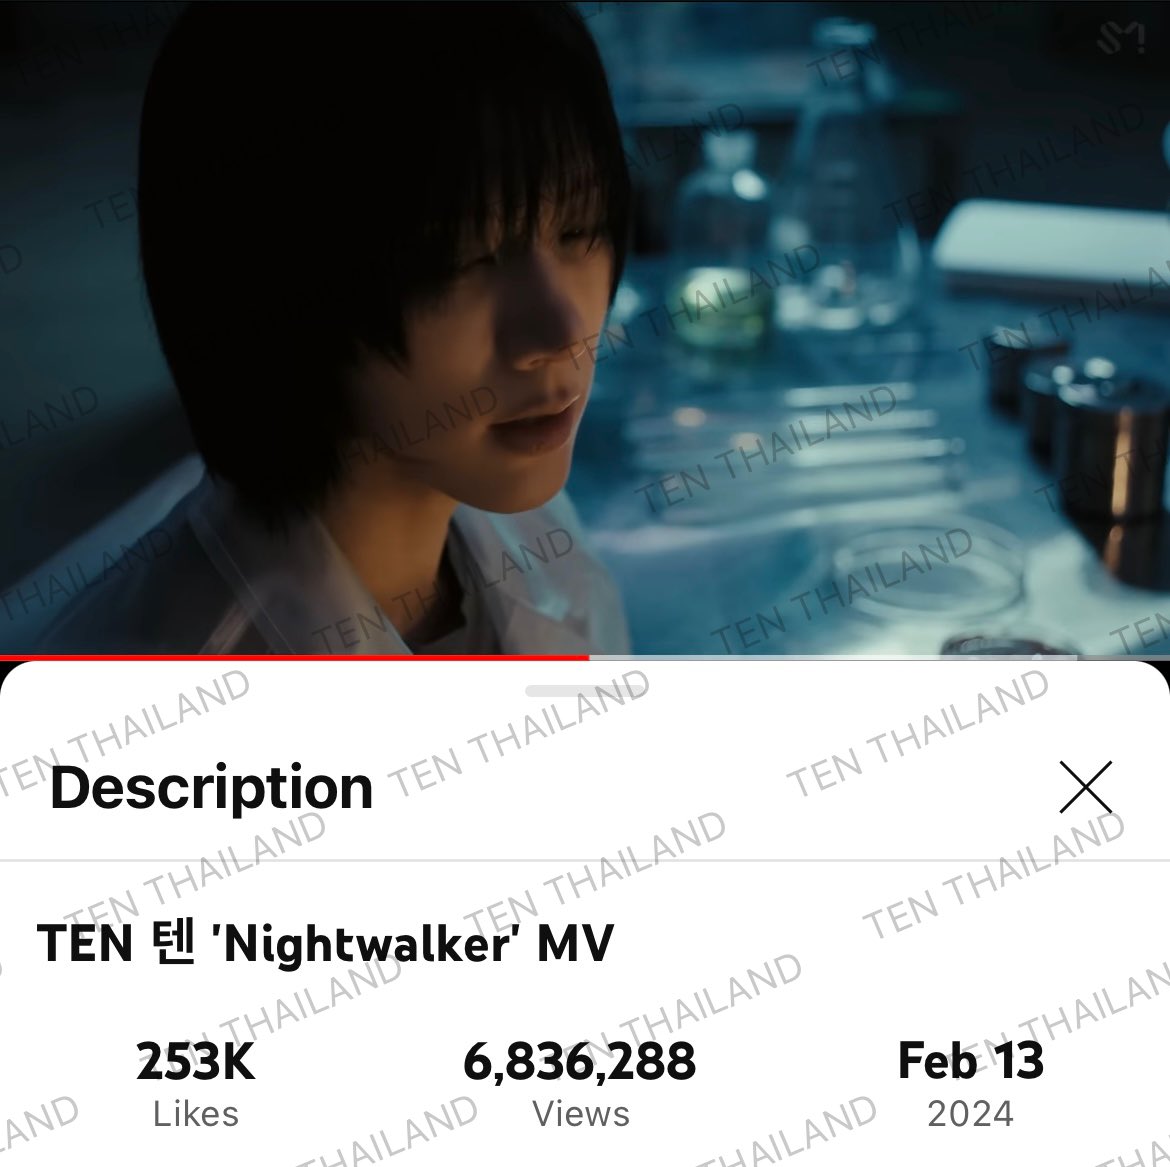 ใครยังปั่นอยู่ยกมือขึ้นนน! 🙌🏻 พาน้องไนท์ไป 7M กัน!! 🥳 #TEN_Nightwalker 🎁 แจก! อัลบั้ม Light On Ver. (ได้การ์ด POB Ktown4u และการ์ด TENzenter) จำนวน 10 รางวัล!! 🎉 📌กติกา - ดู MV Nightwalker อย่างถูกวิธี youtu.be/ri6FaIavnWA?si… - แคปหน้า MV ที่มียอดวิวระหว่าง 6,836,288 -…